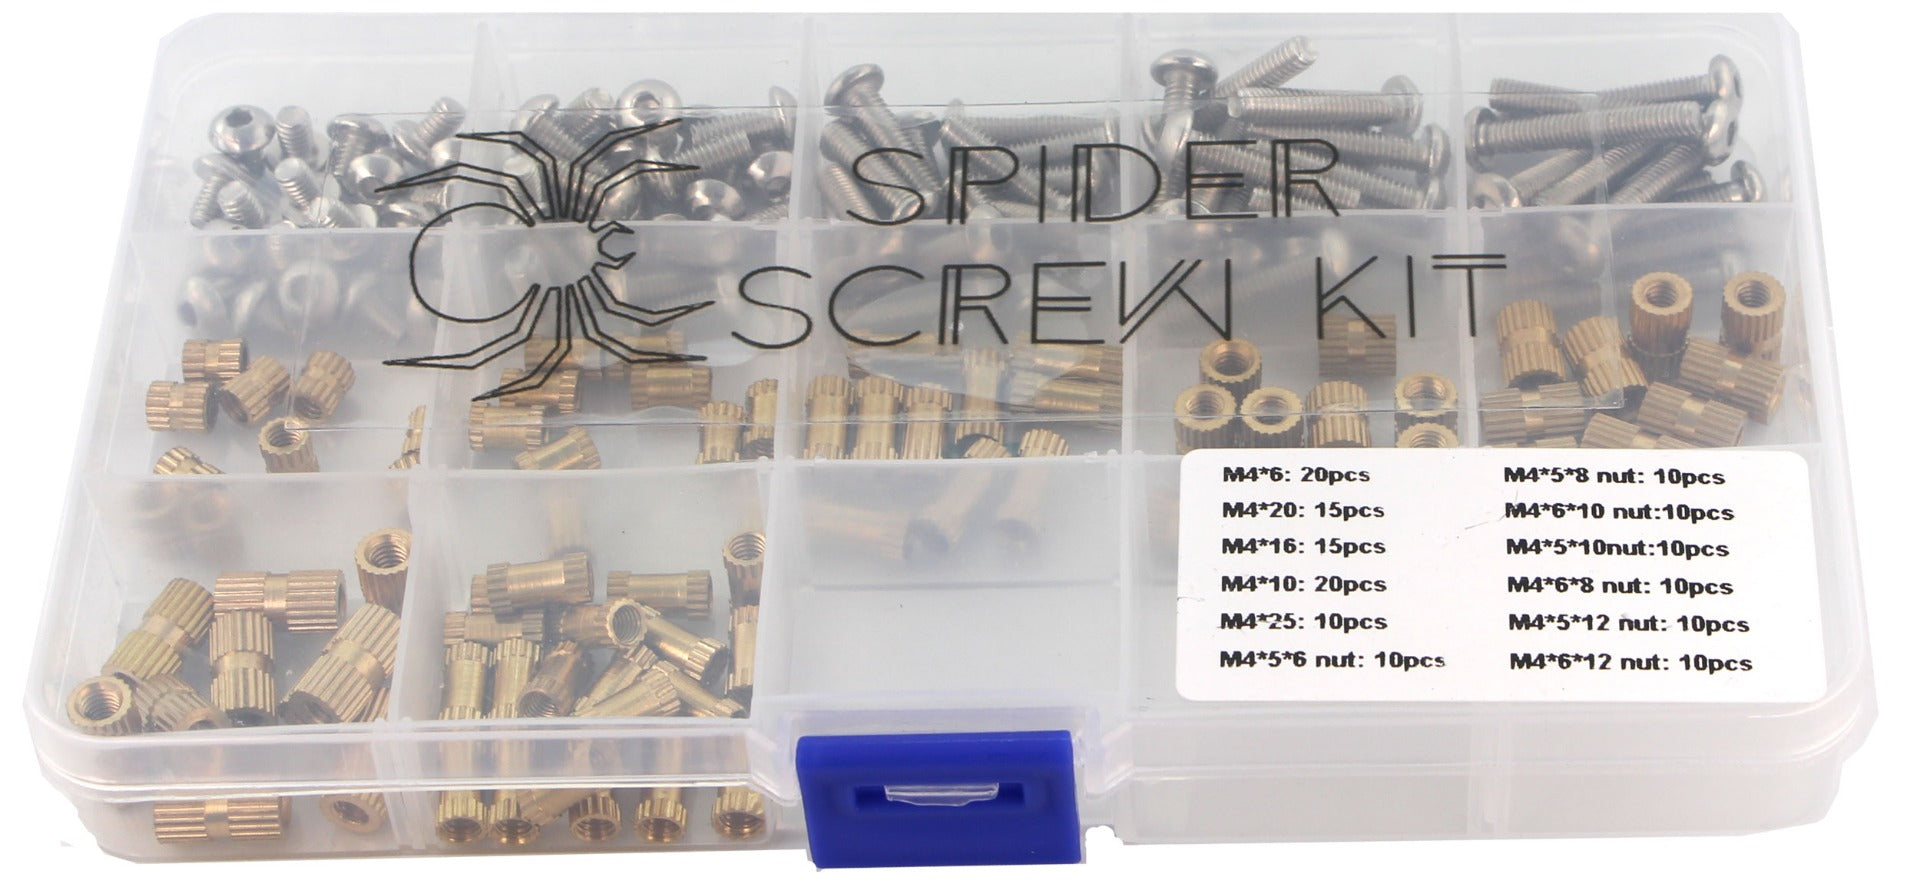 SpiderScrew Kit with Knurls - M4 - 80 pcs